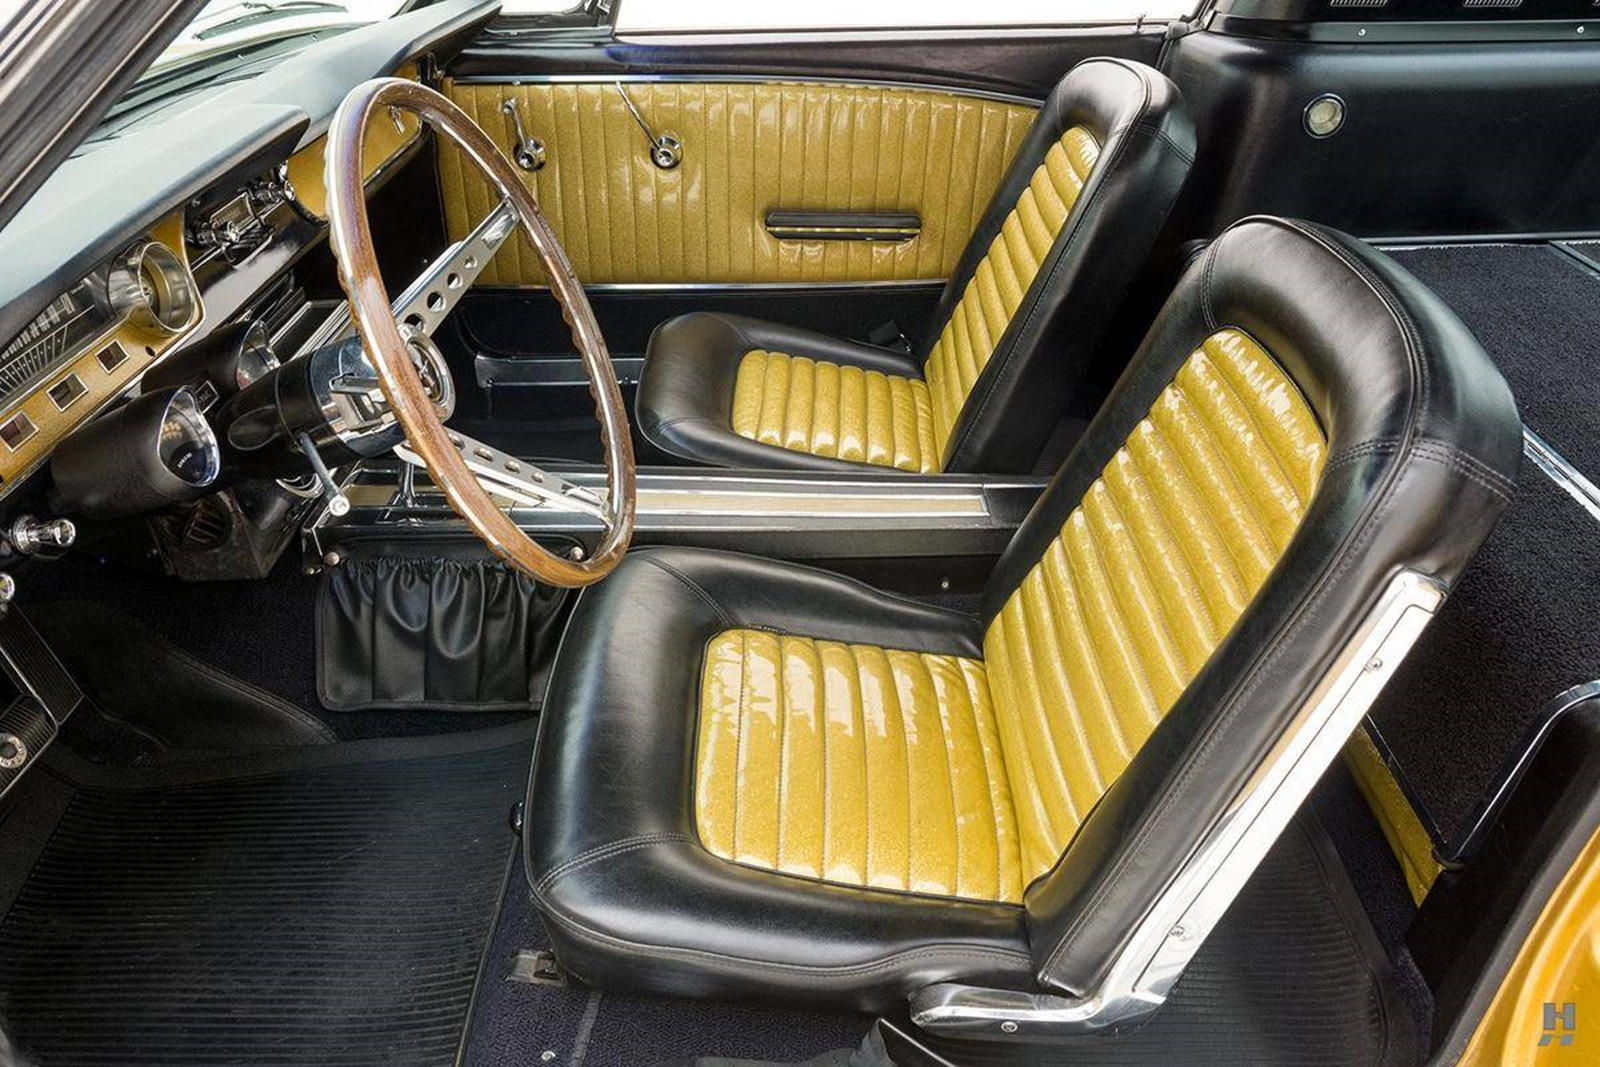 Первоначально продюсеры заключили сделку с Ford на поставку специально построенного 1965 Ford Mustang Fastback отделанного золотом для фильма. Уникальный Mustang, созданный компанией Ford в единственном экземпляре, отличался металлической золотой лив